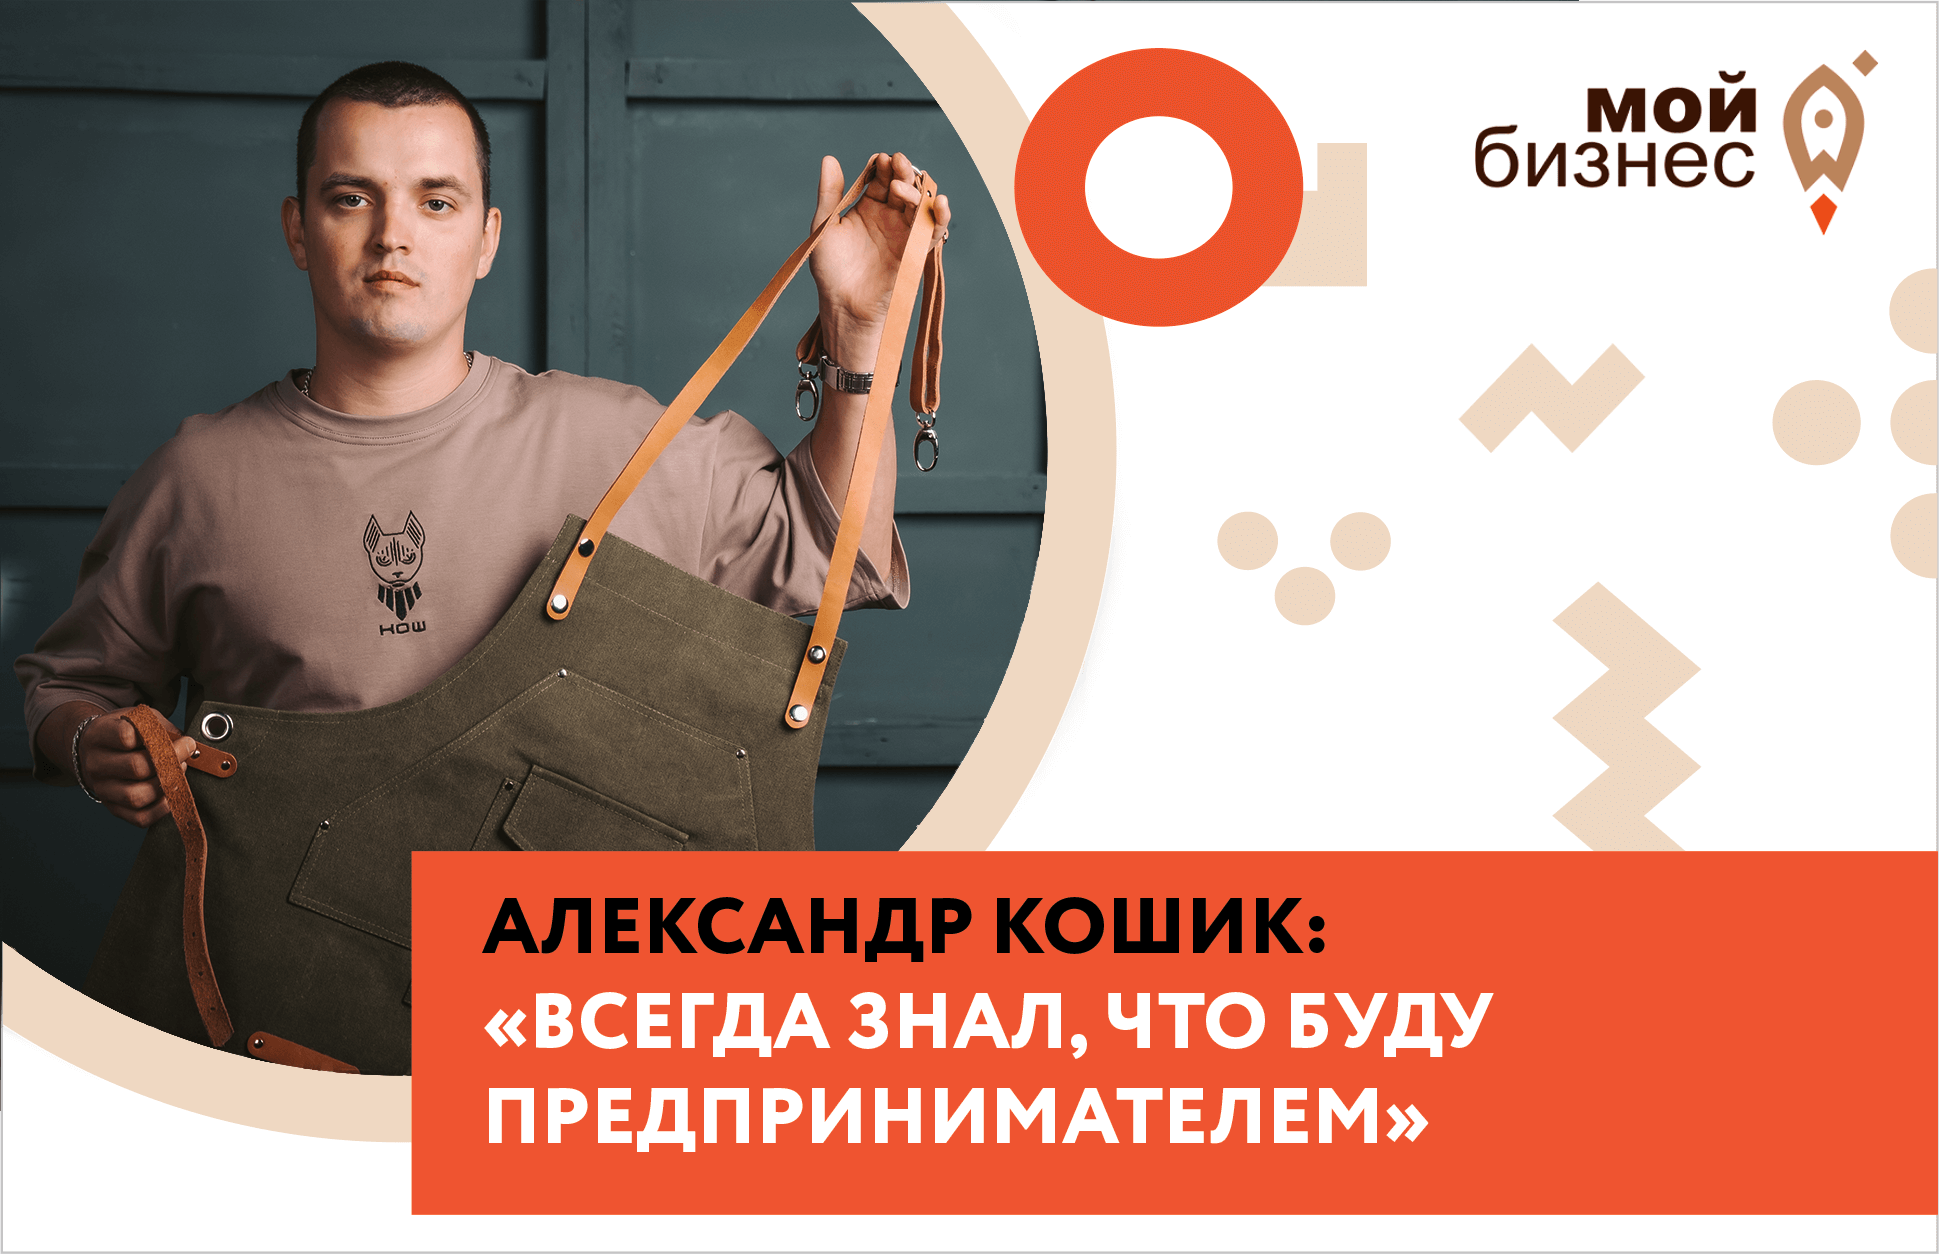 Александр Кошик: “Всегда знал, что буду предпринимателем”